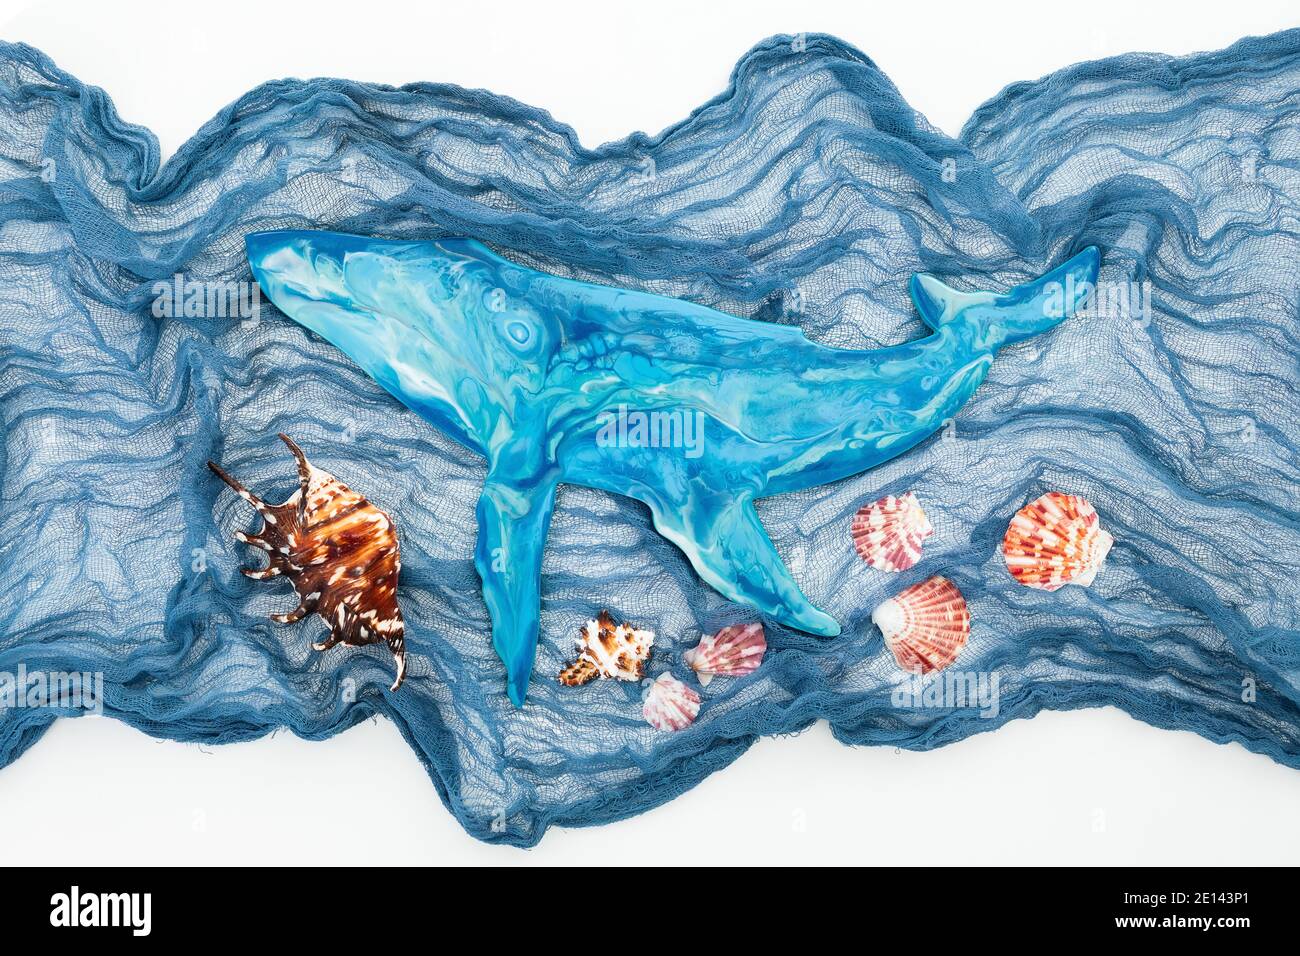 Baleine bleue d'art en résine avec tissu et coquillages sur fond blanc.  Flat lay, vue de dessus Photo Stock - Alamy